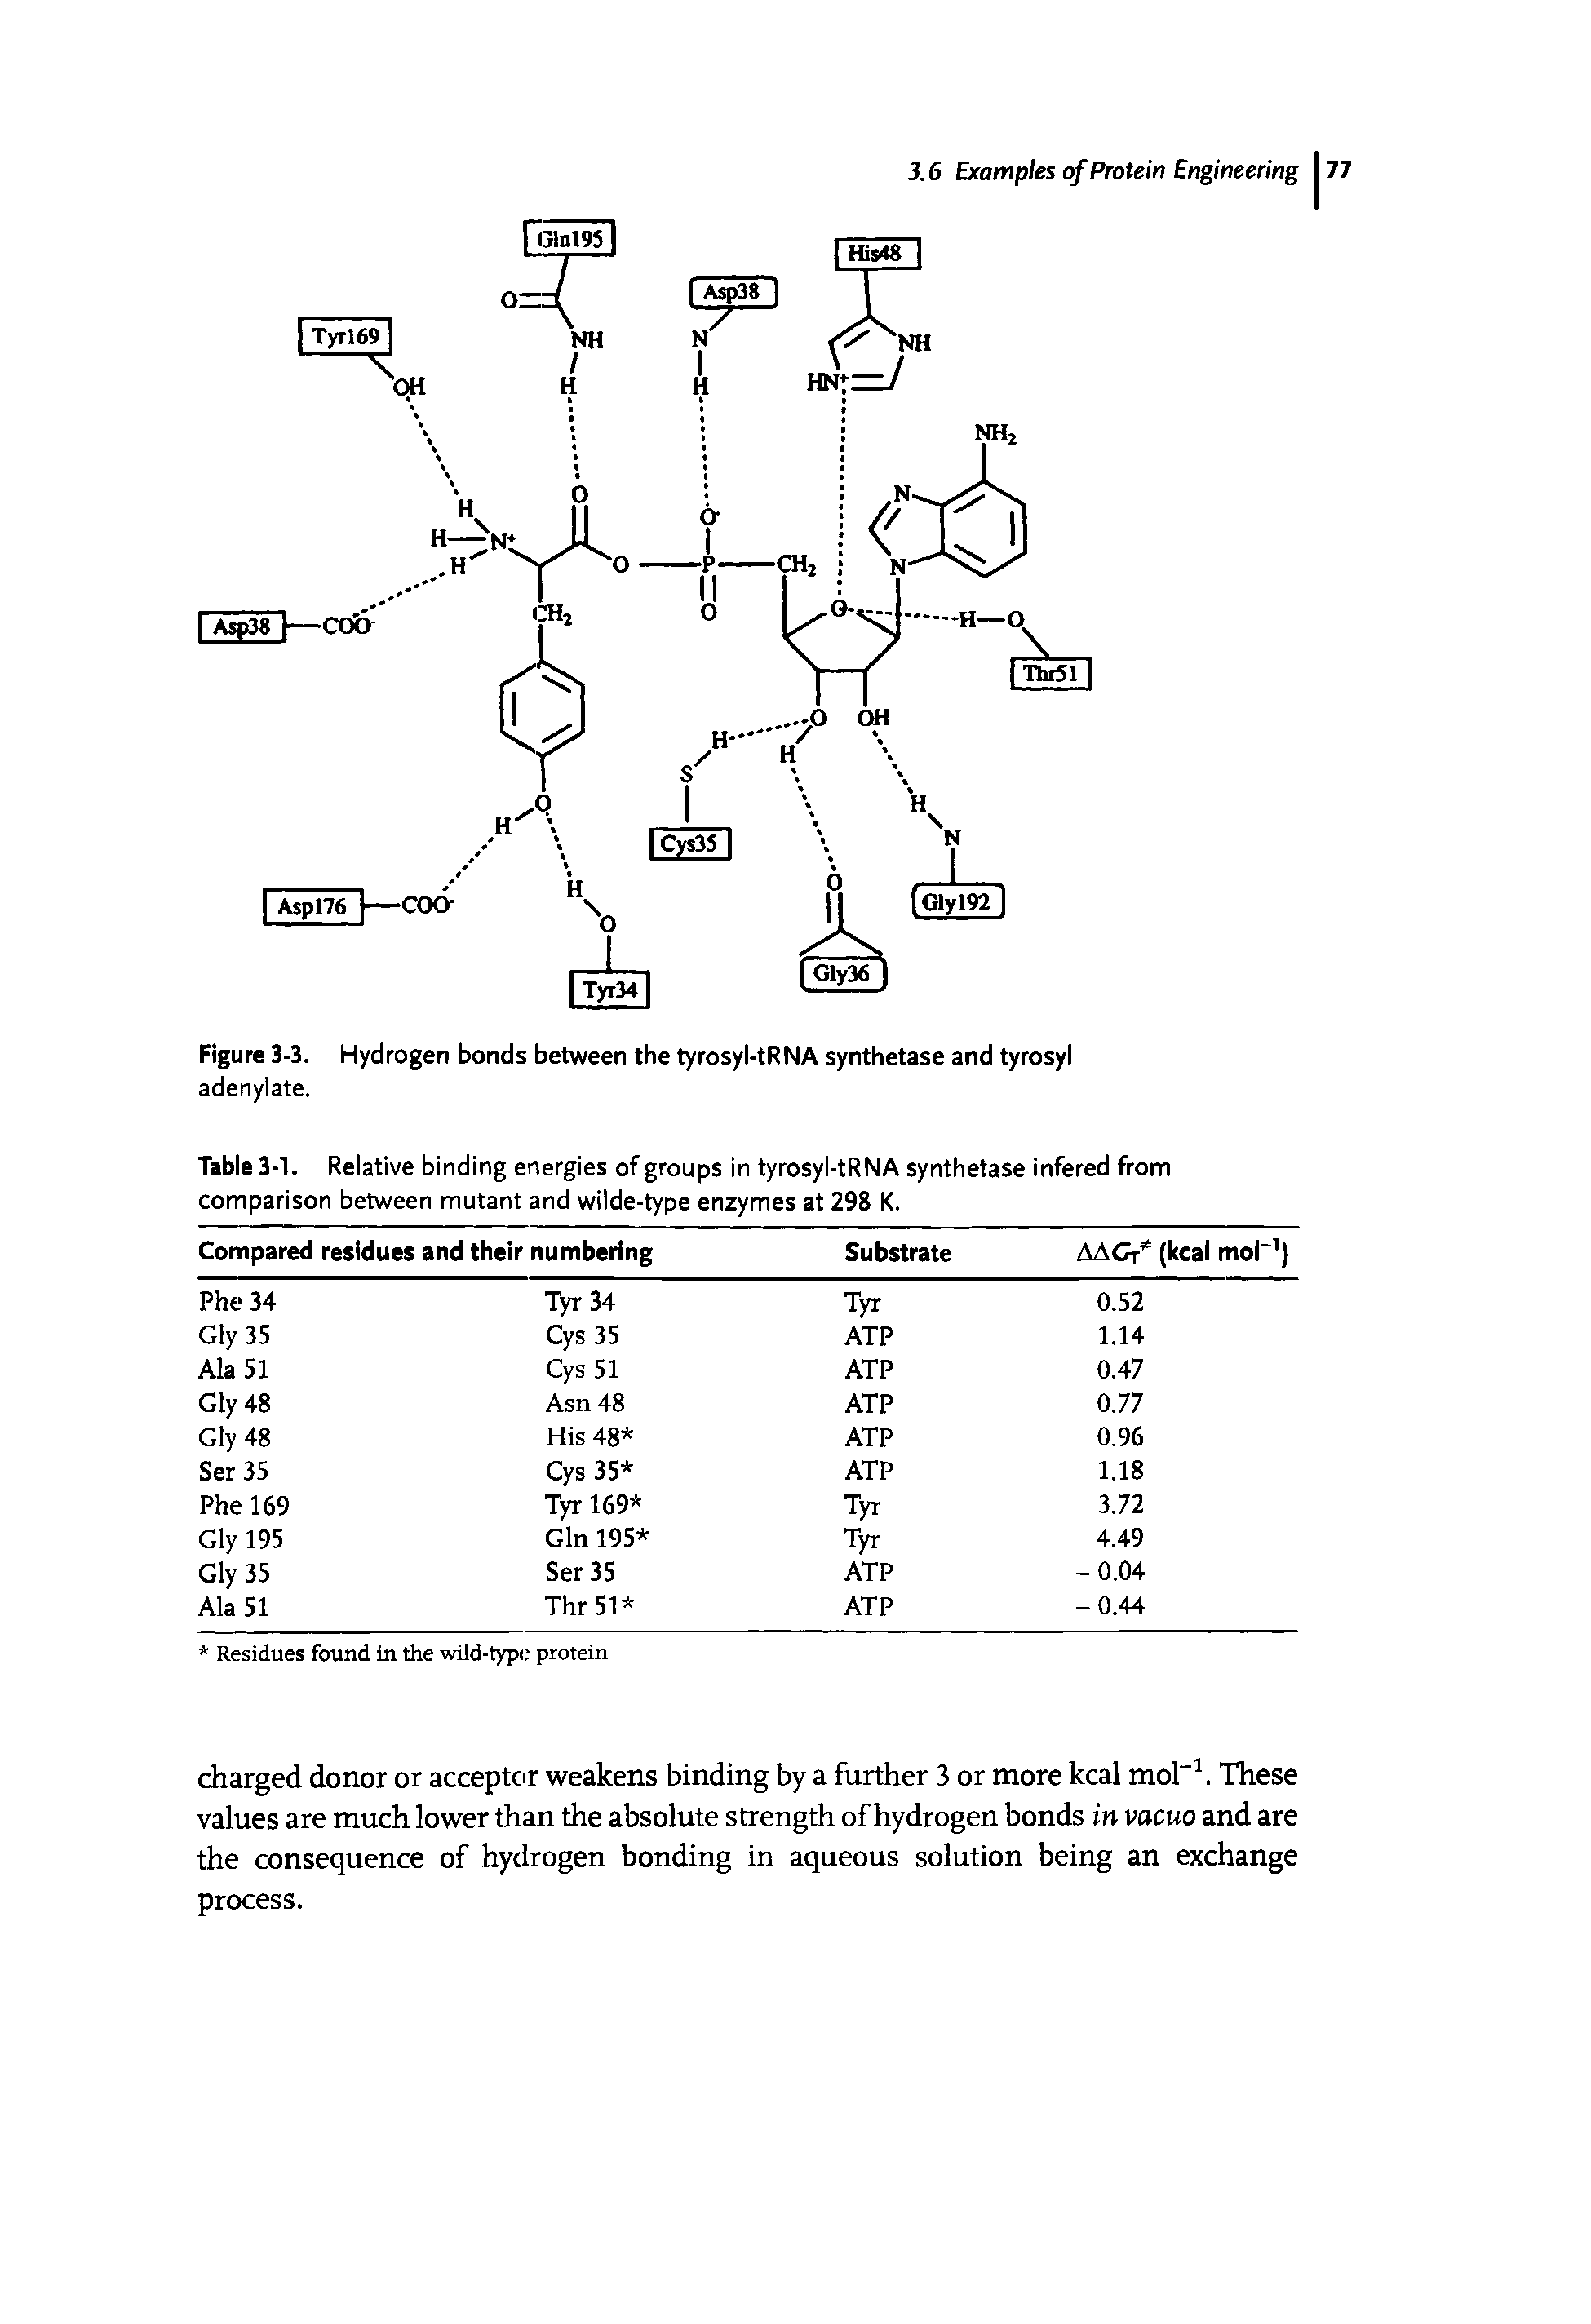 Figure 3-3. Hydrogen bonds between the tyrosyl-tRNA synthetase and tyrosyl adenylate.